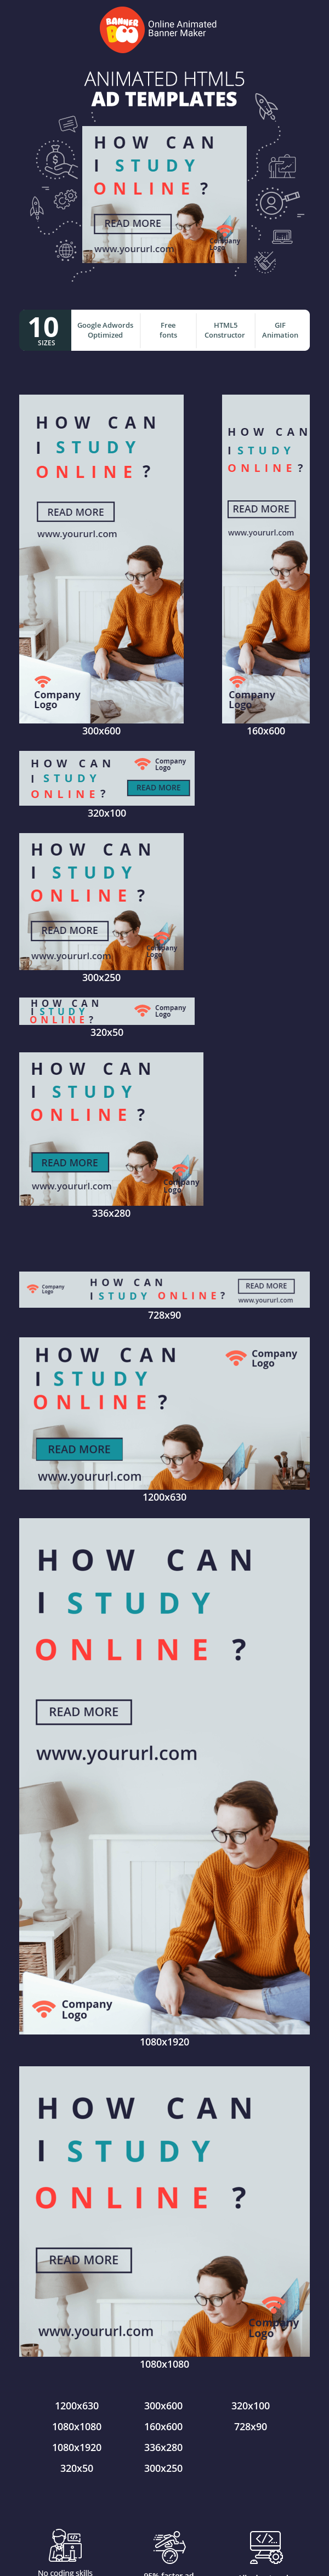 Шаблон рекламного банера — How can I study online